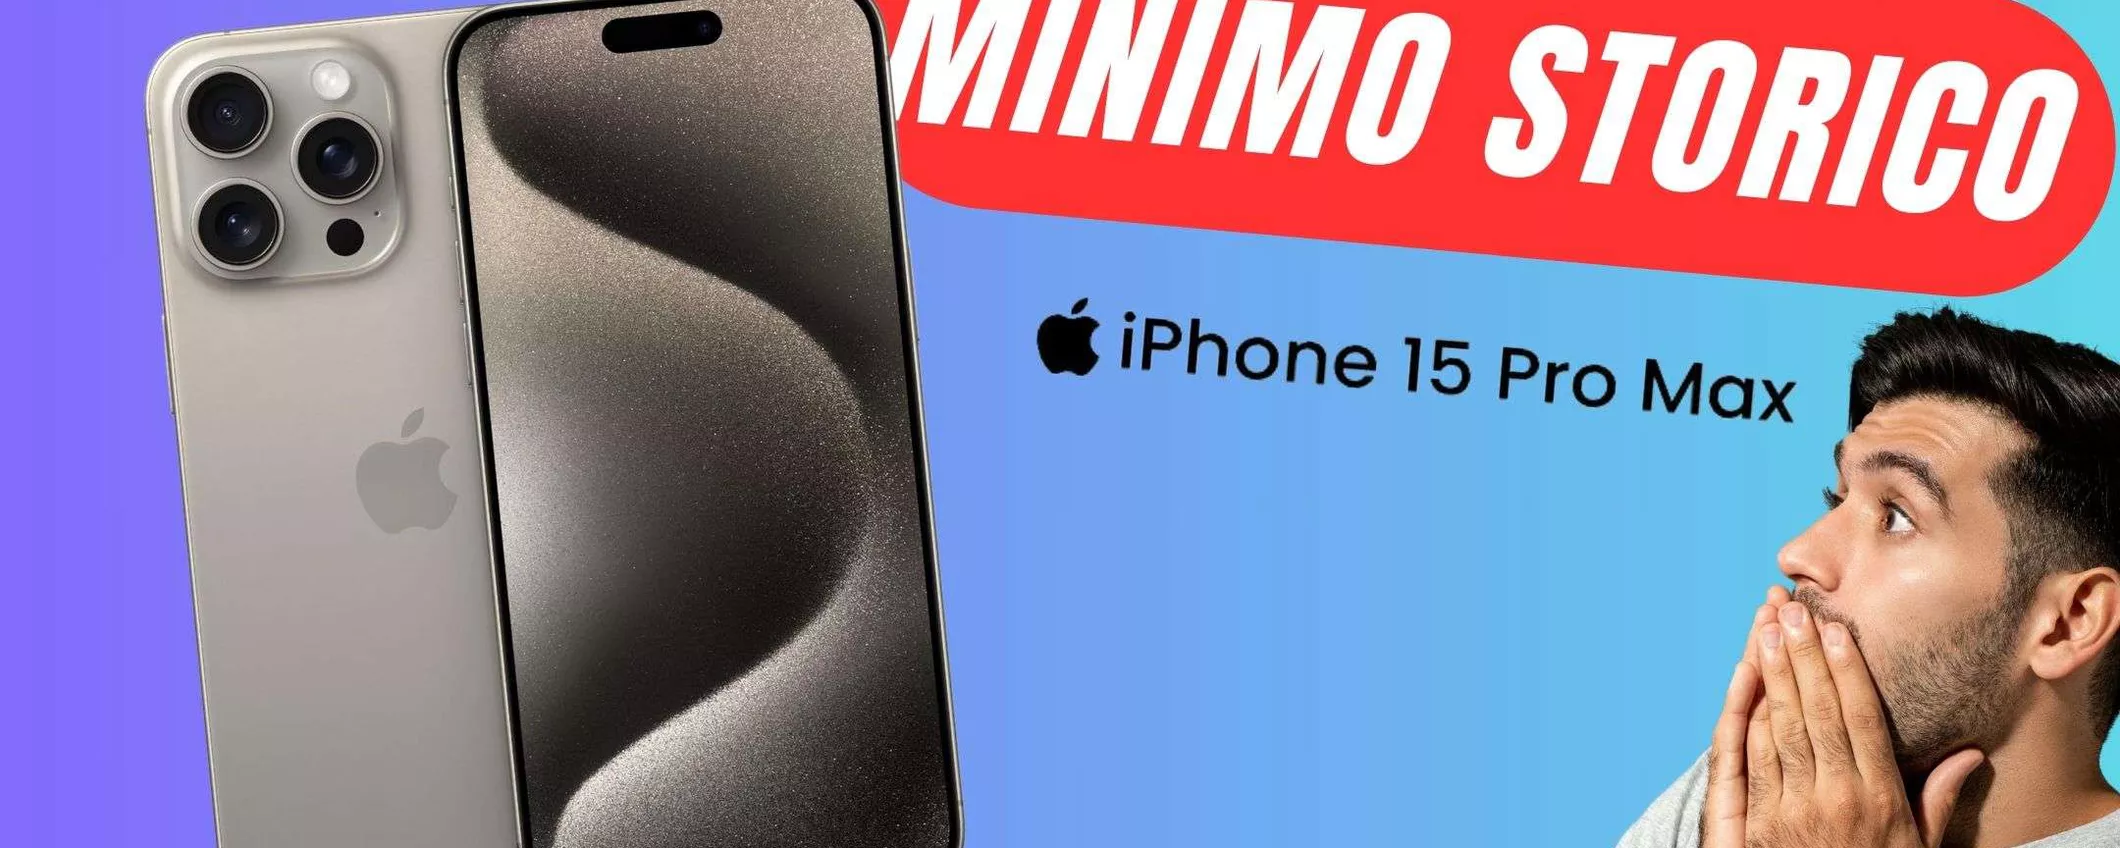 Apple iPhone 15 Pro Max CROLLA al MINIMO STORICO